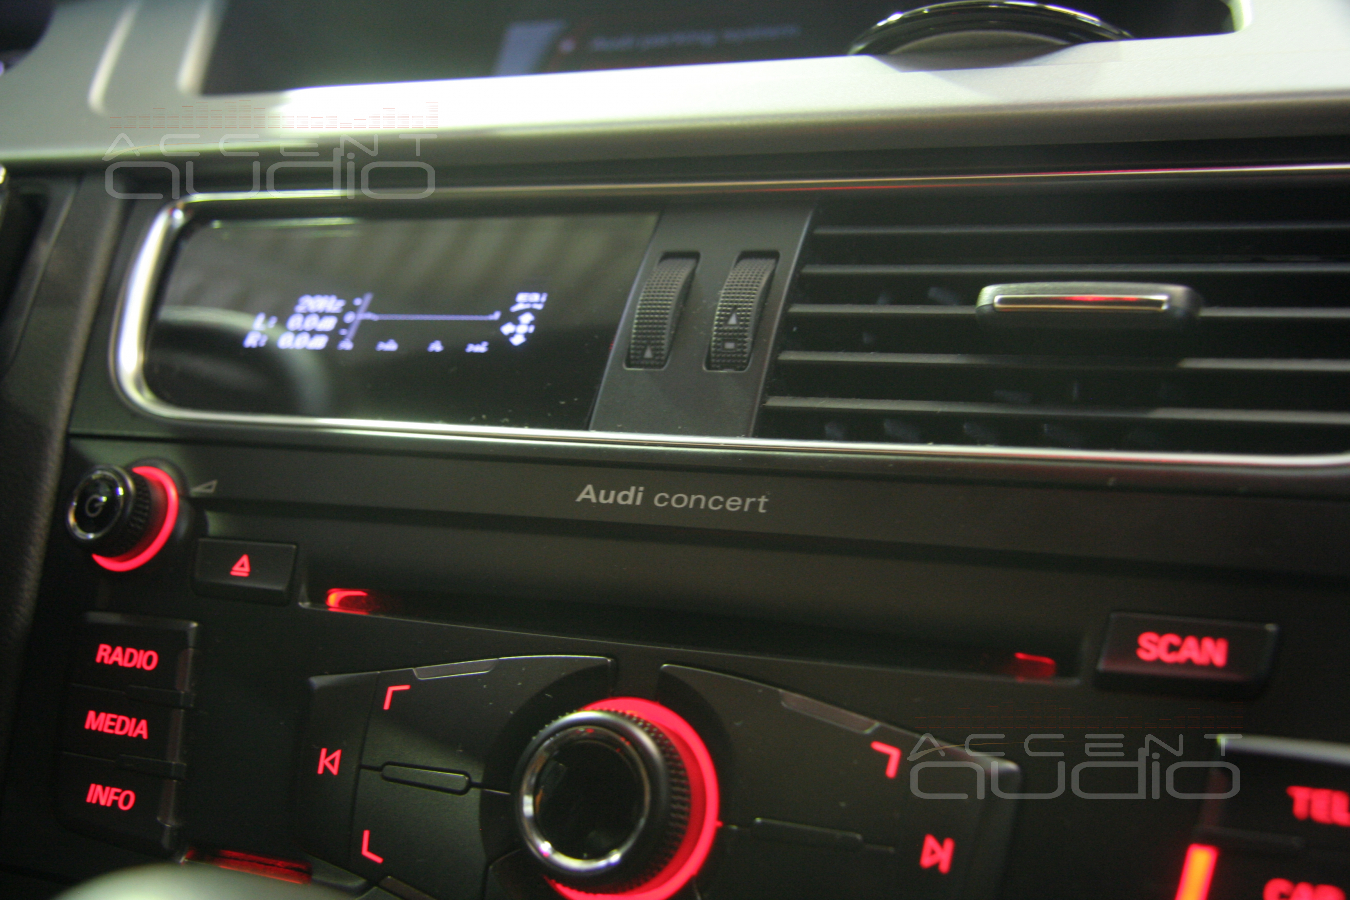 Аудиосистема для Audi a4 allroad Quattro: уникальные решения для автомобилей бизнес и премиум класса